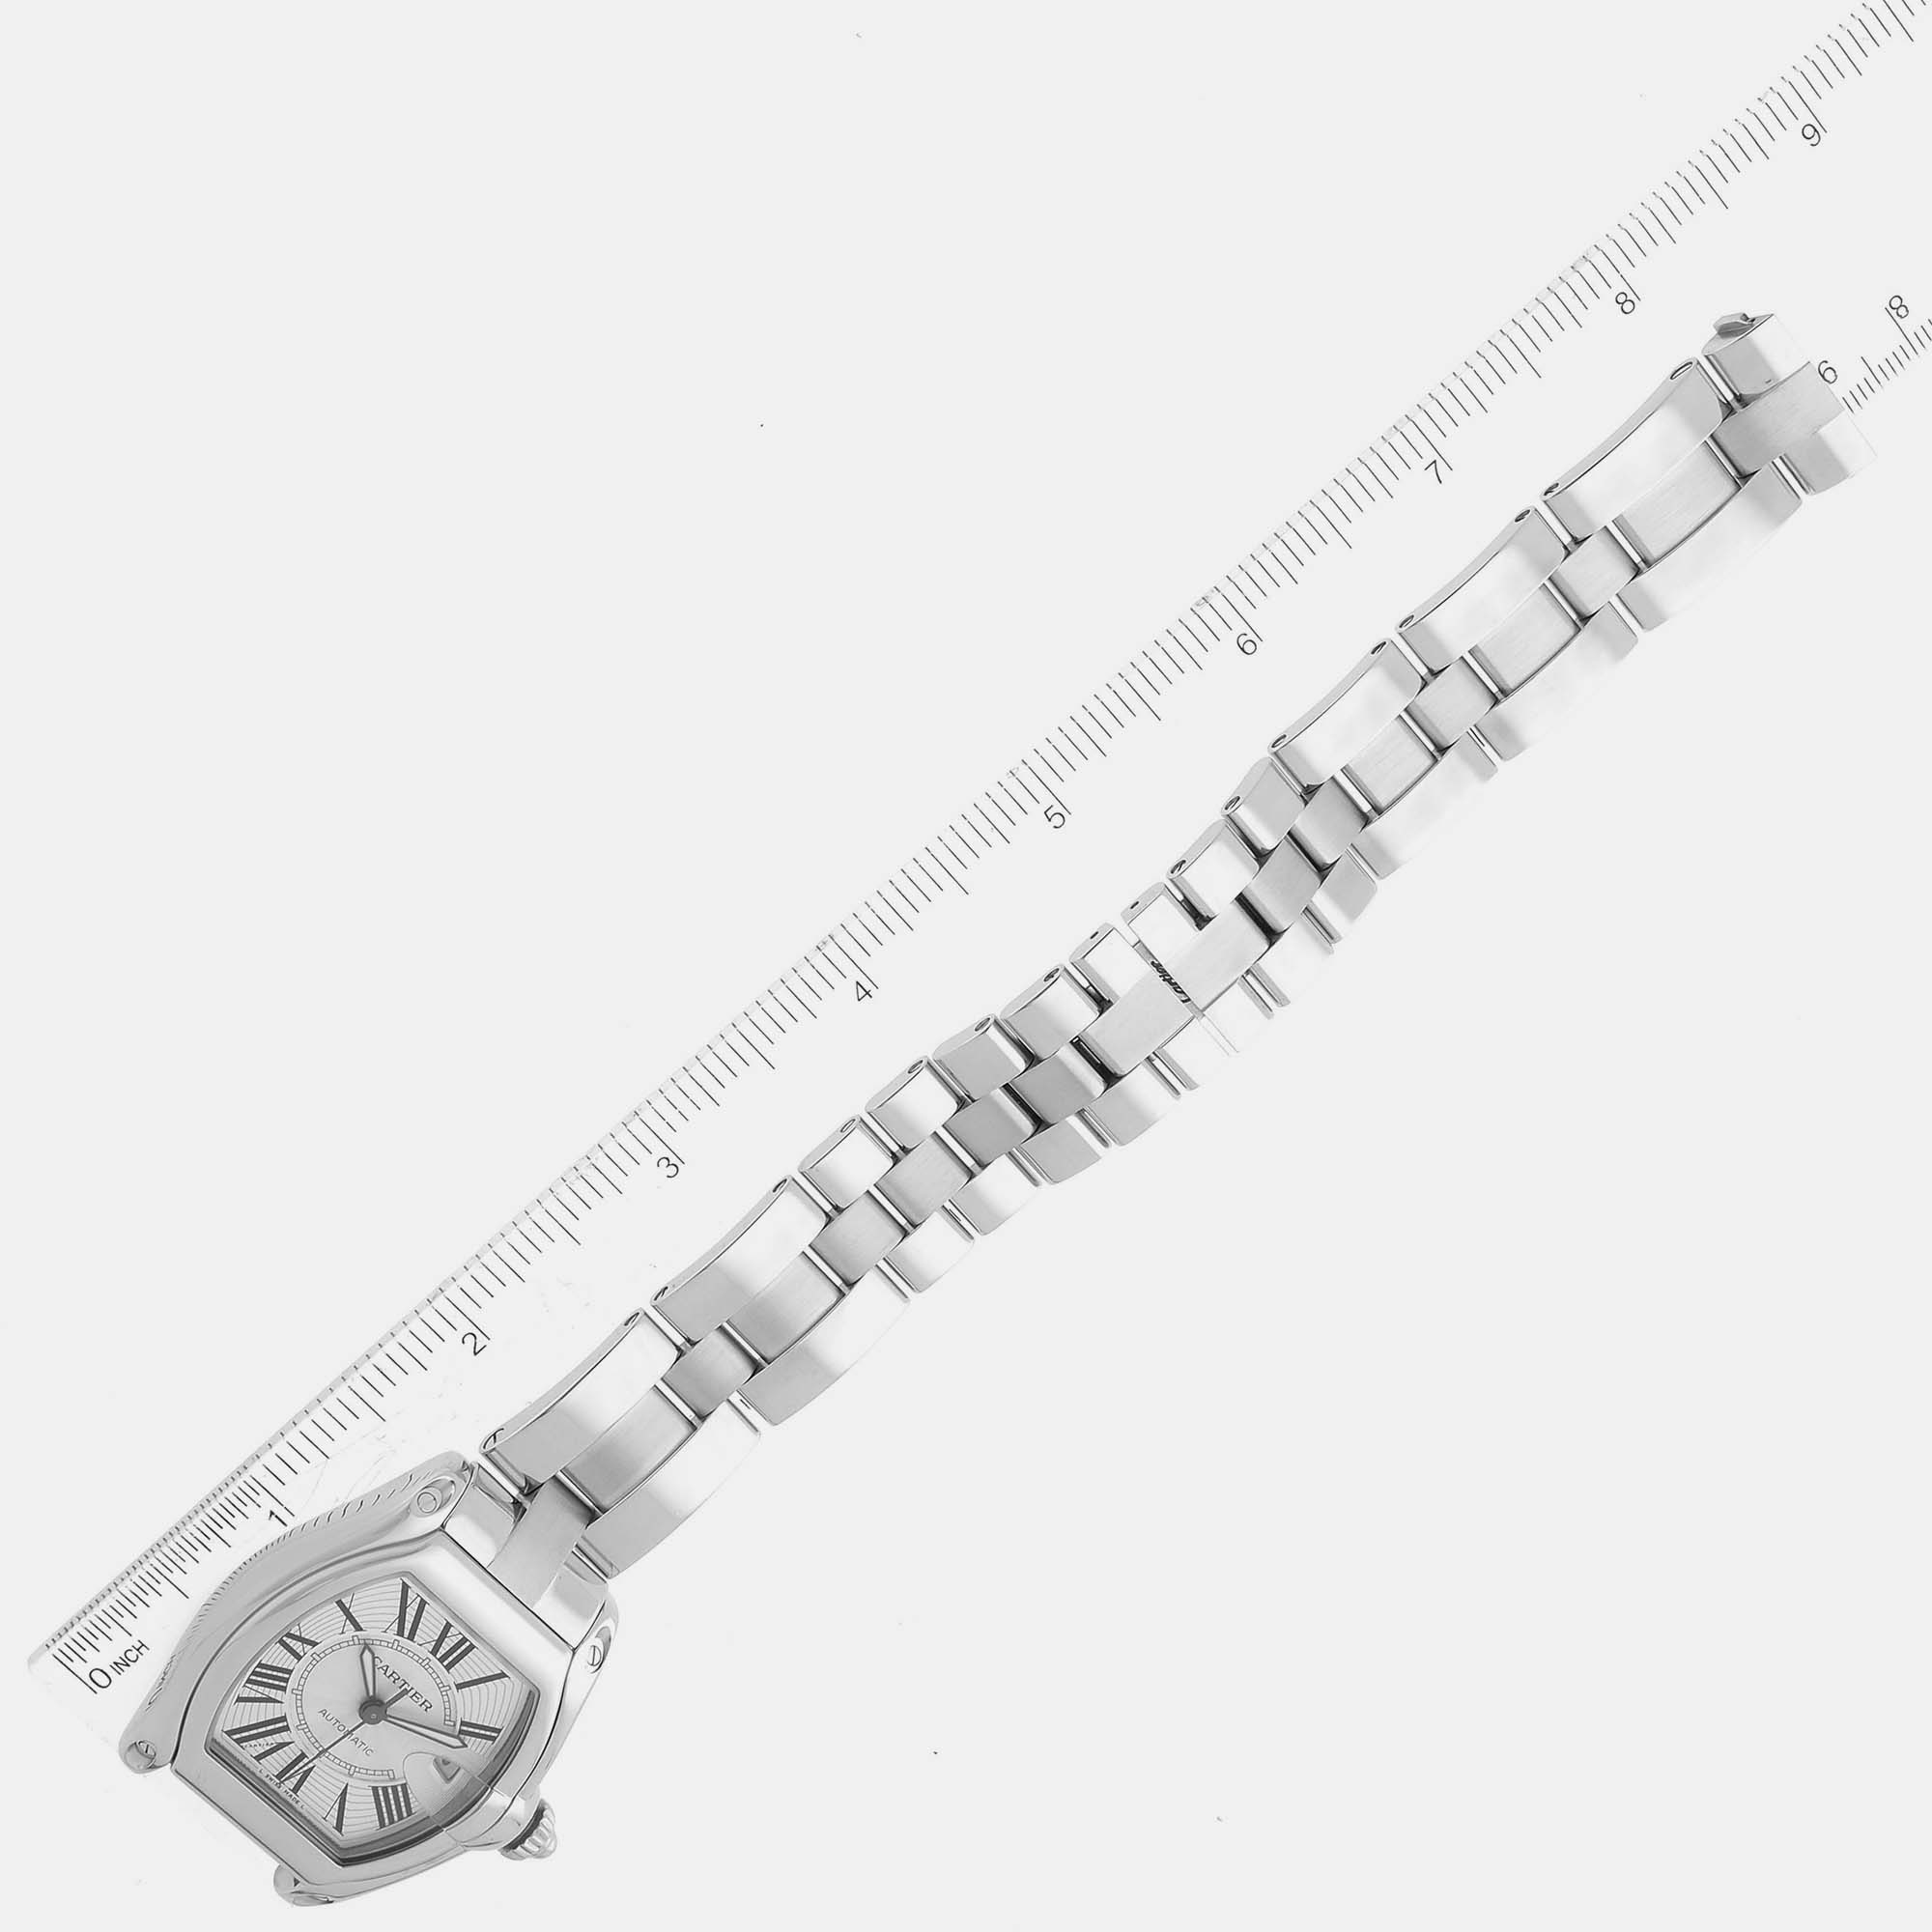 Cartier Roadster Large Silver Dial Steel Men's Watch W62025V3 38 X 43 Mm